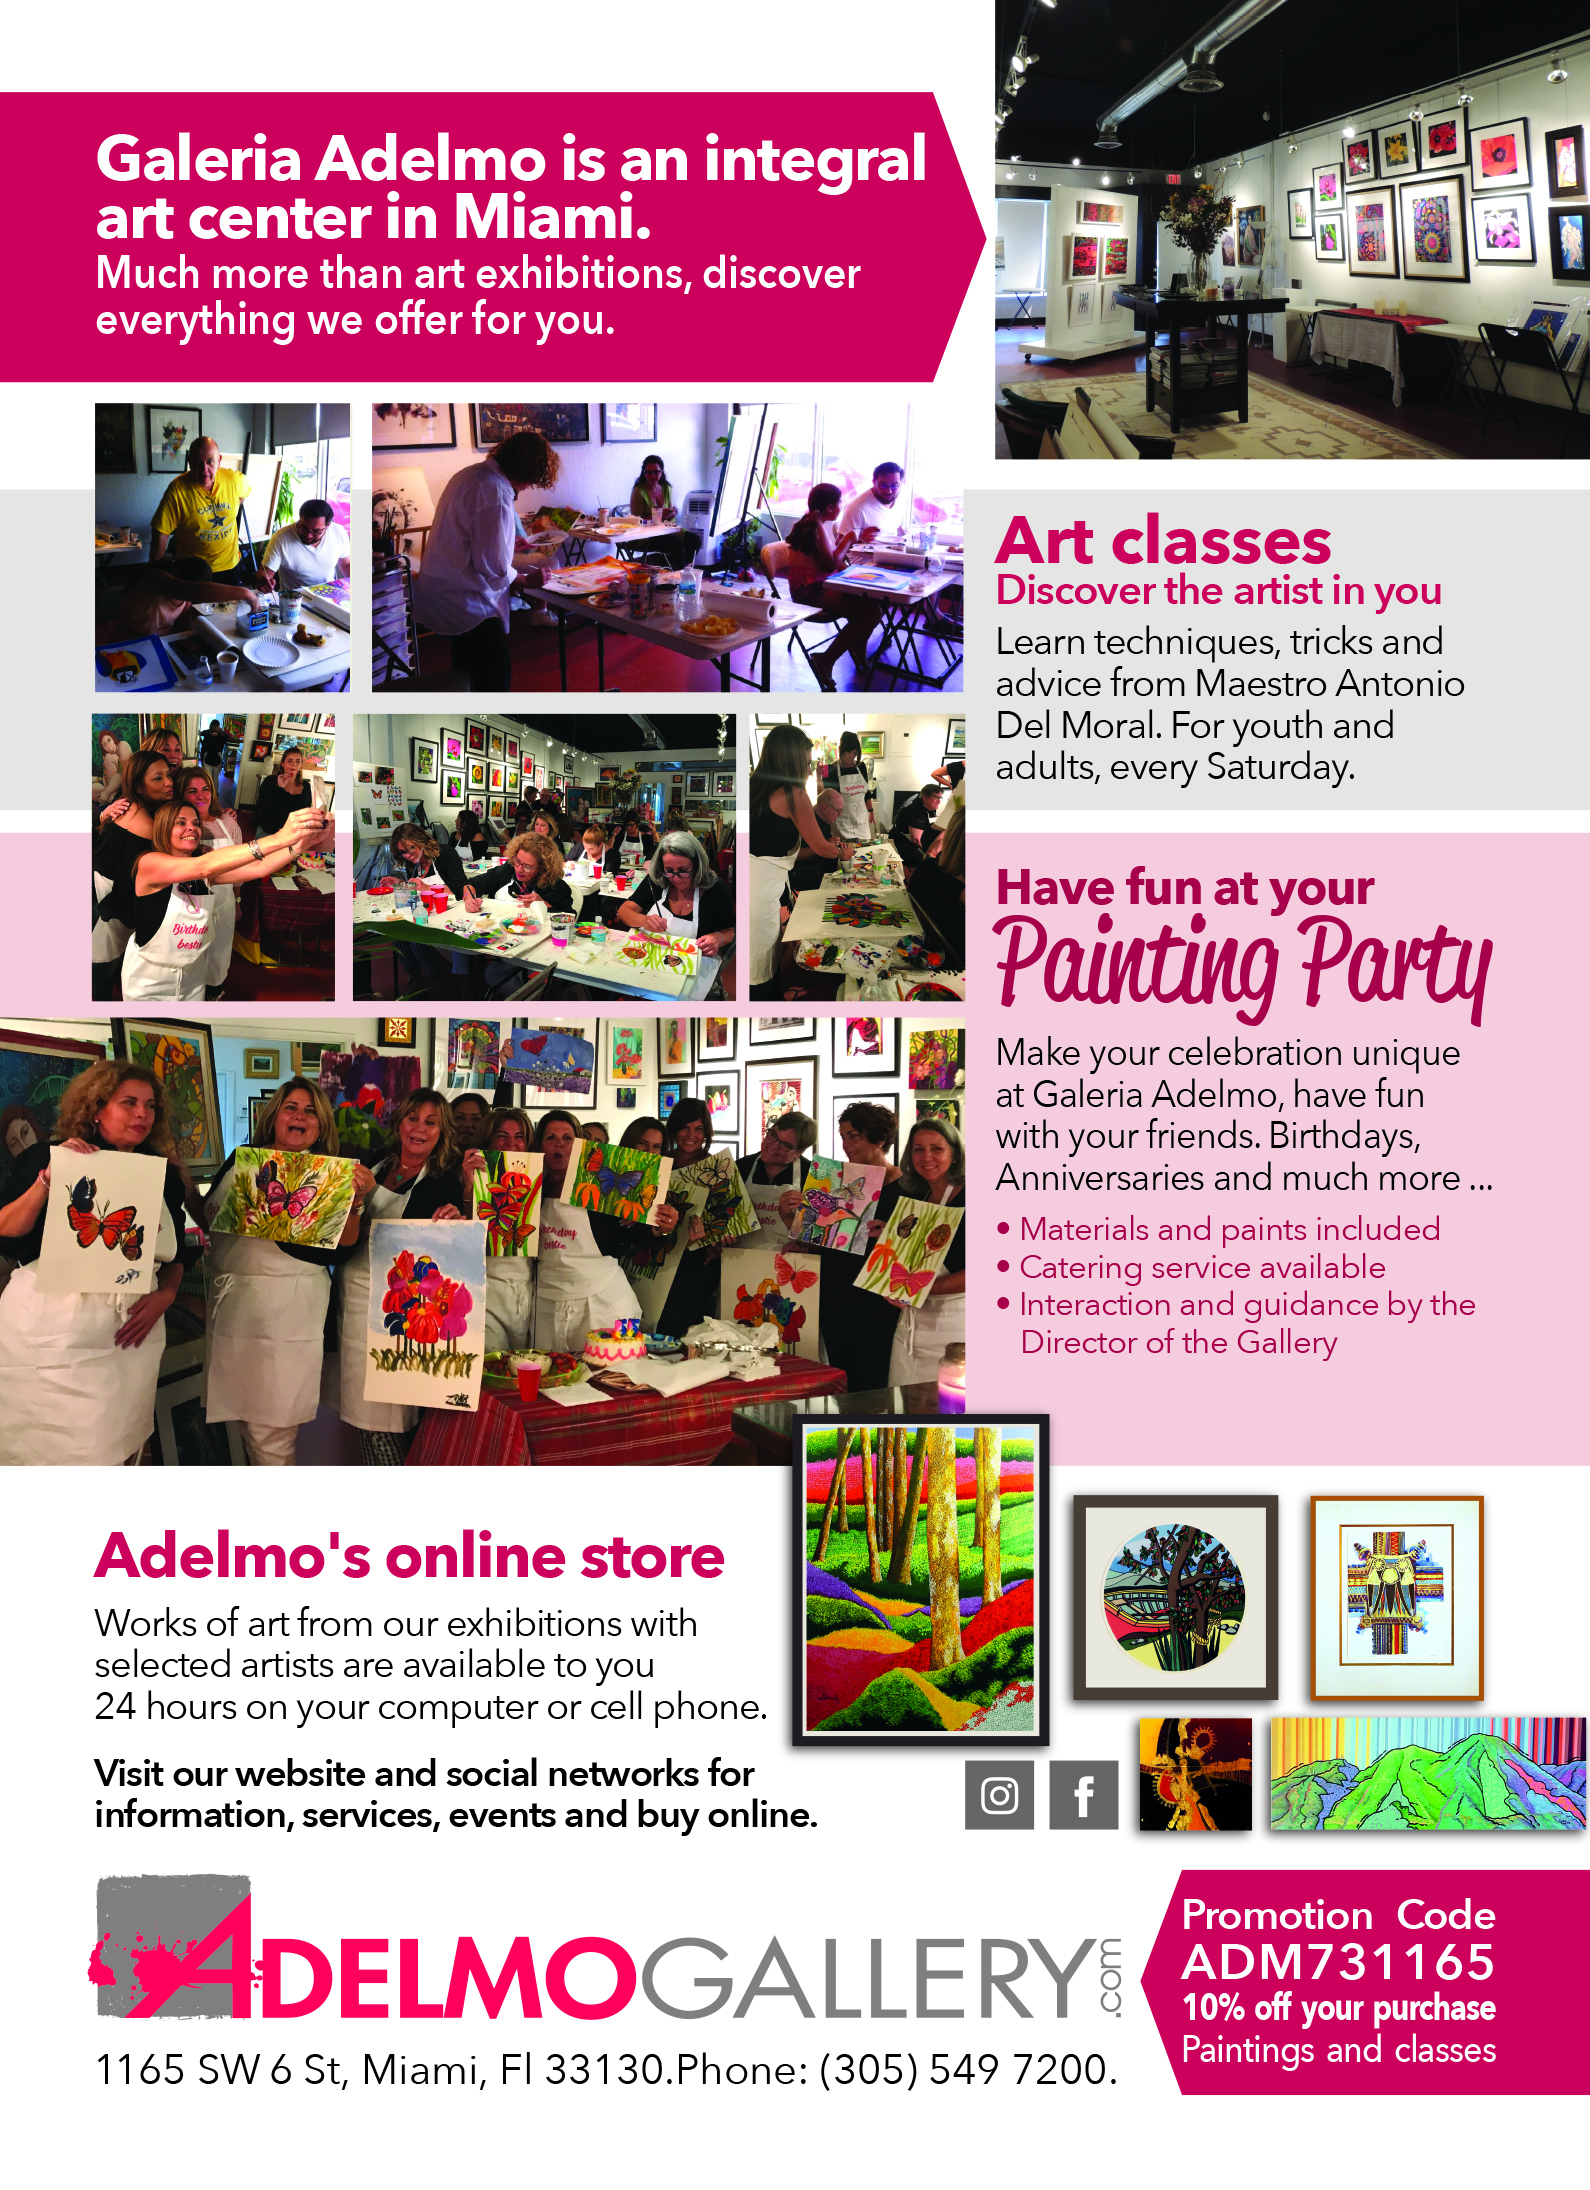 Adelmo Art Gallery Miami, FL